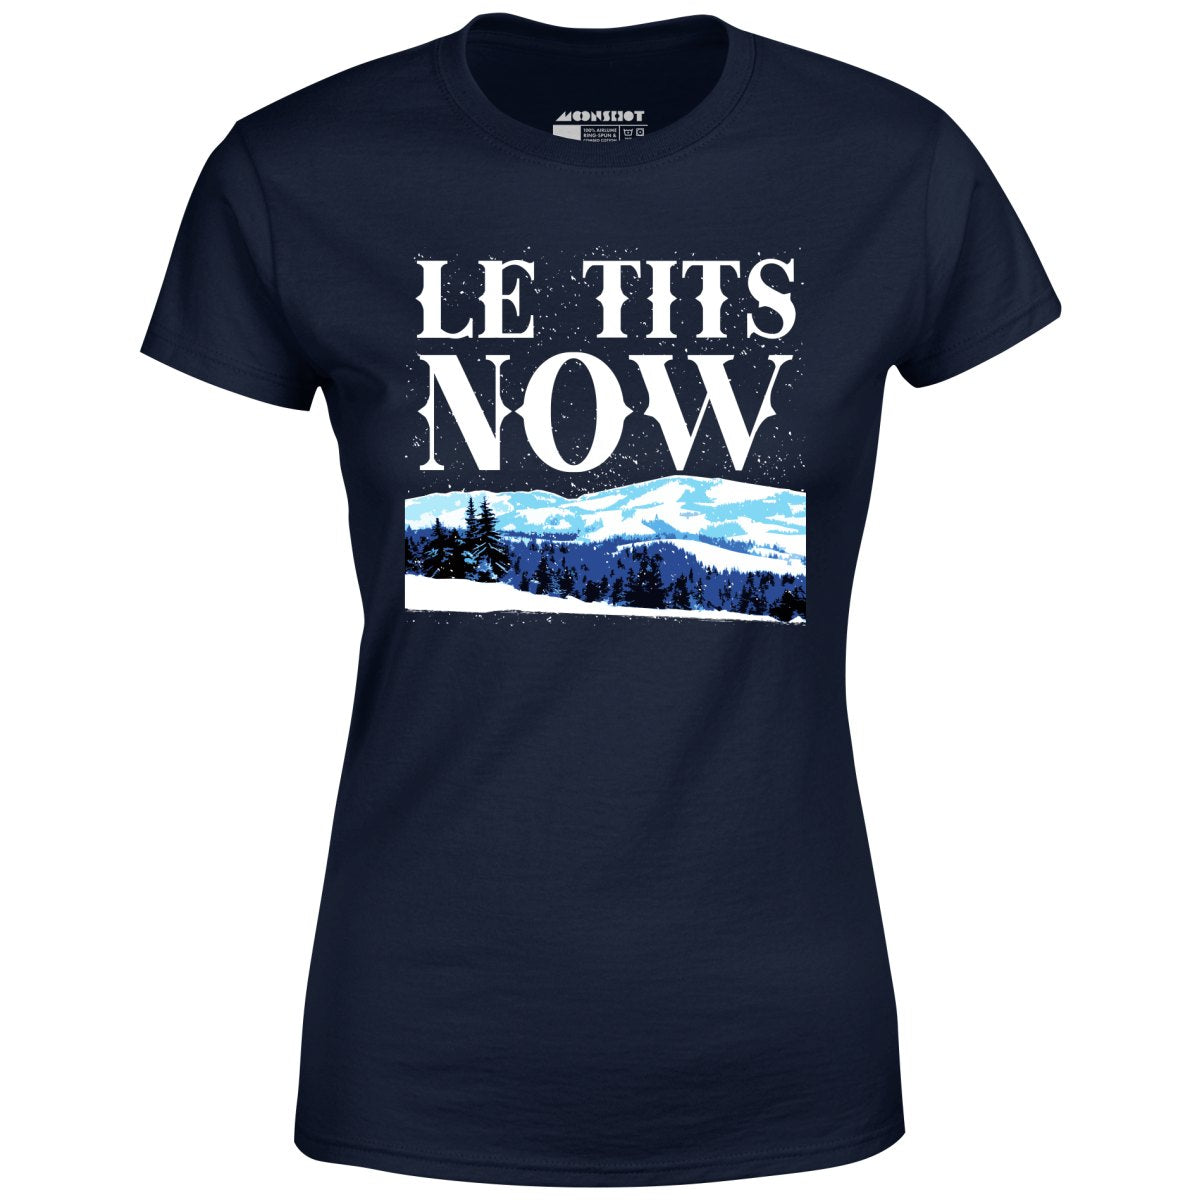 Le Tits Now - Women's T-Shirt